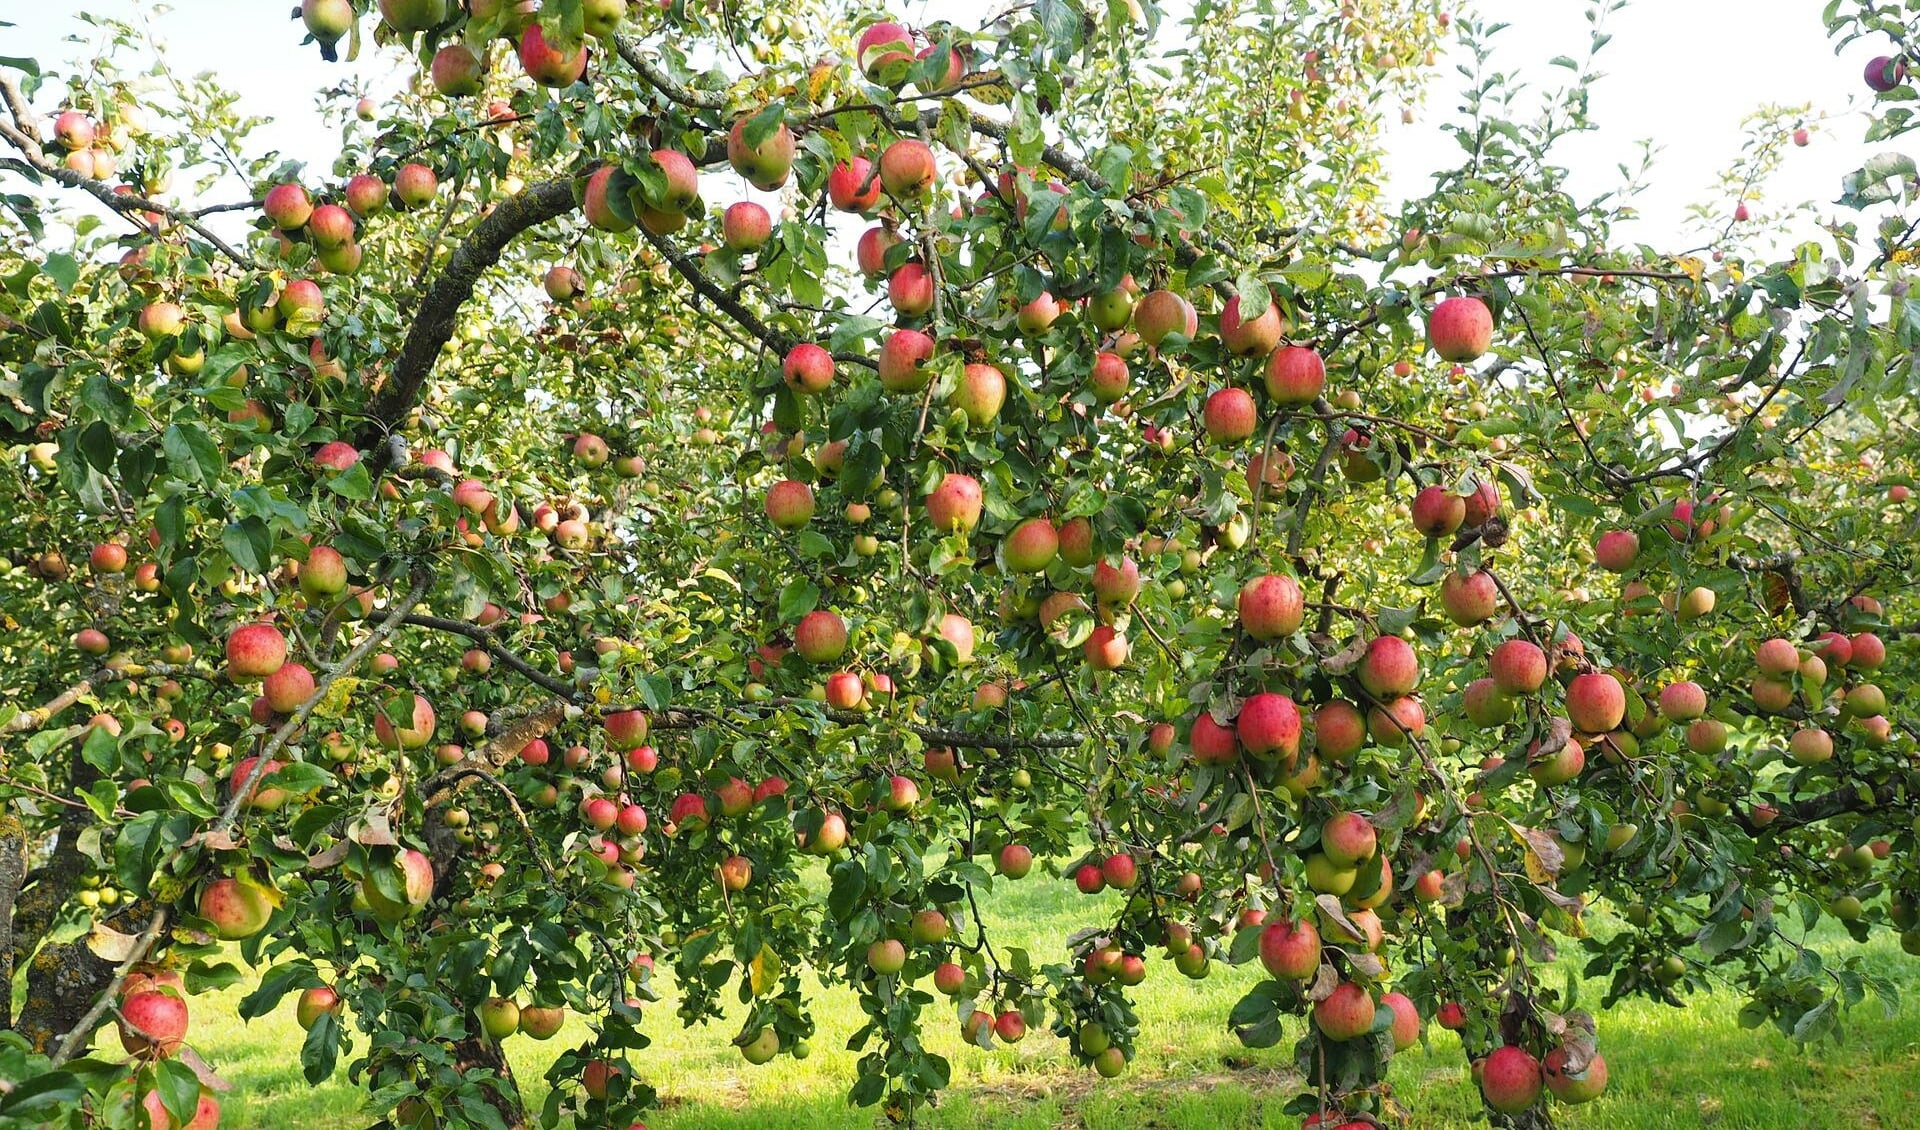 Hopelijk komen er aan de appelbomen in het voedselpark net zoveel appels als aan bovenstaande appelboom.